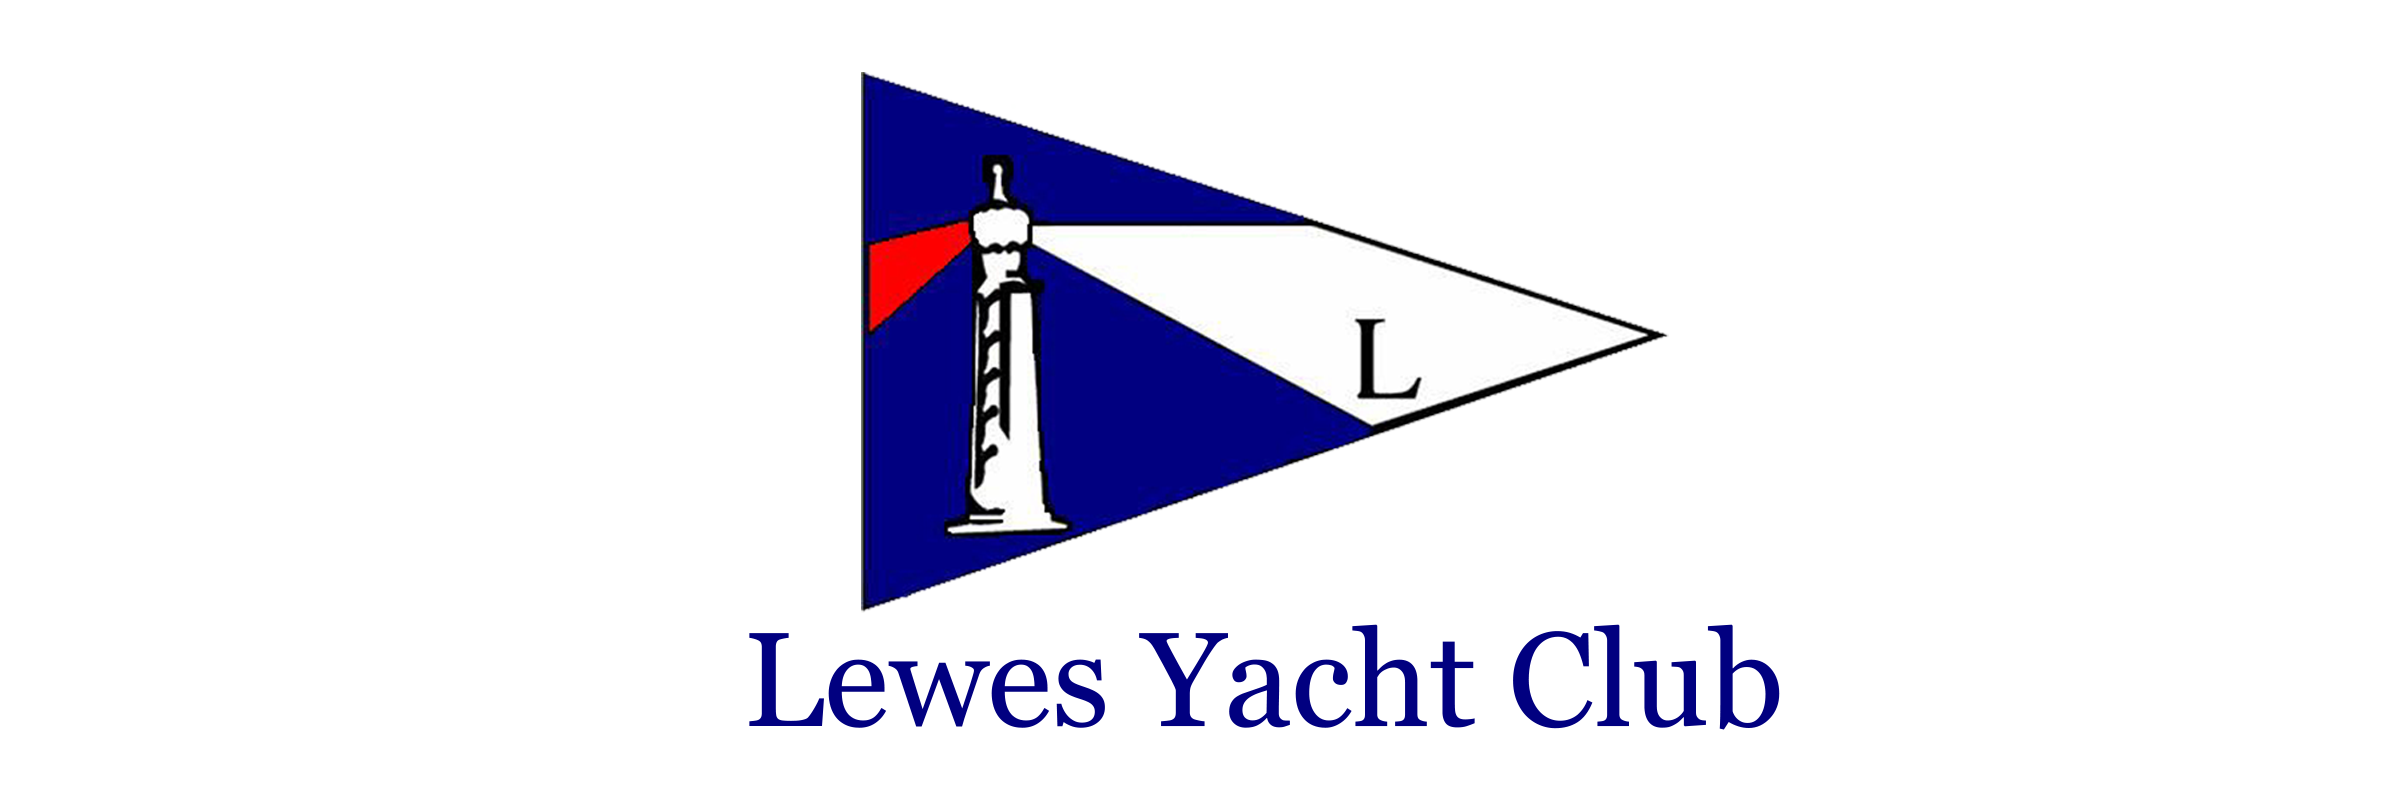 lewes yacht club membership fees